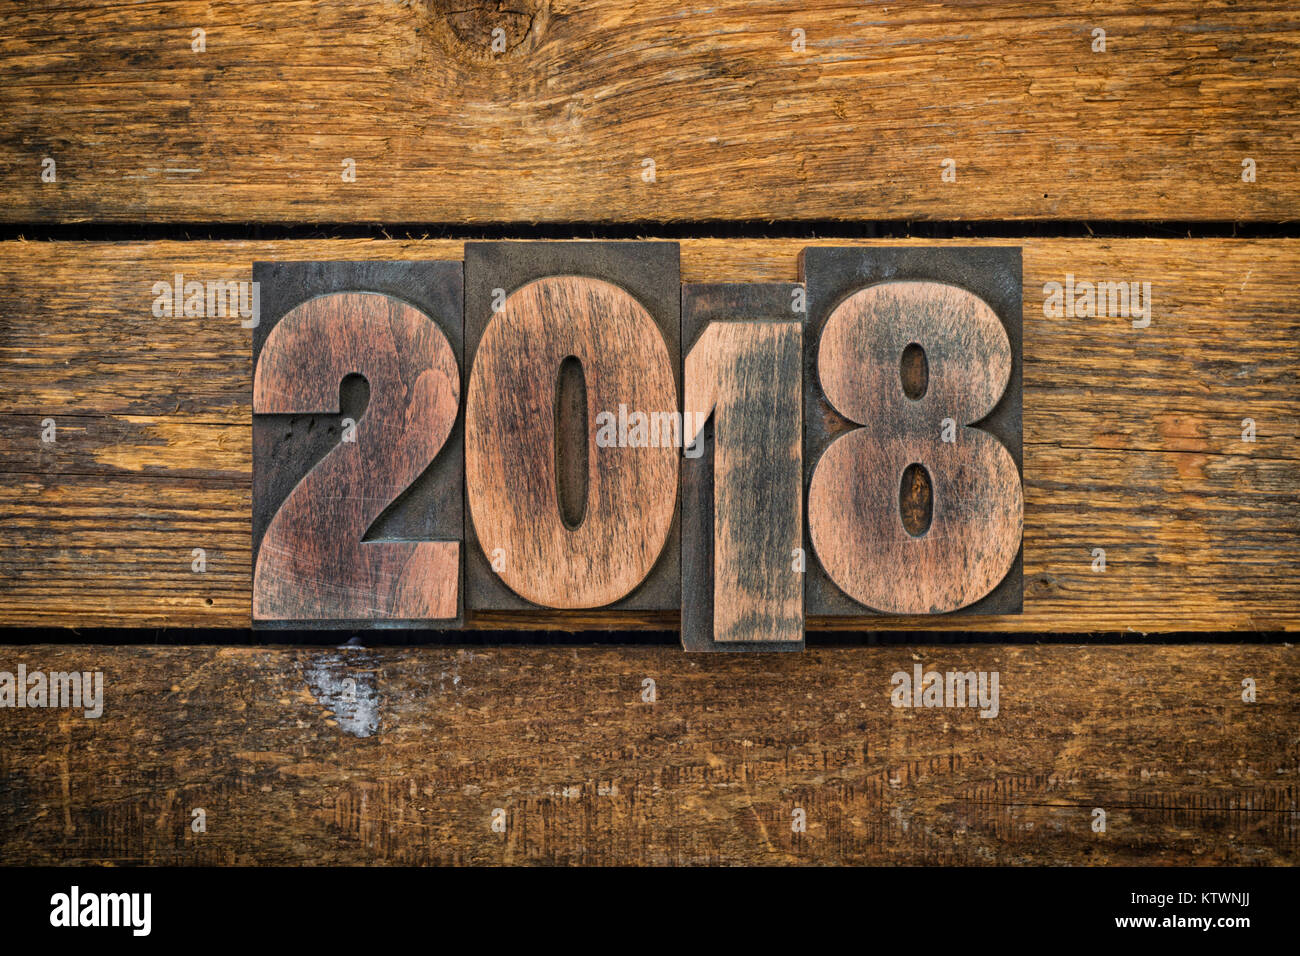 Jeu de l'année 2018 avec la typographie vintage blocs sur ruustic wood background Banque D'Images